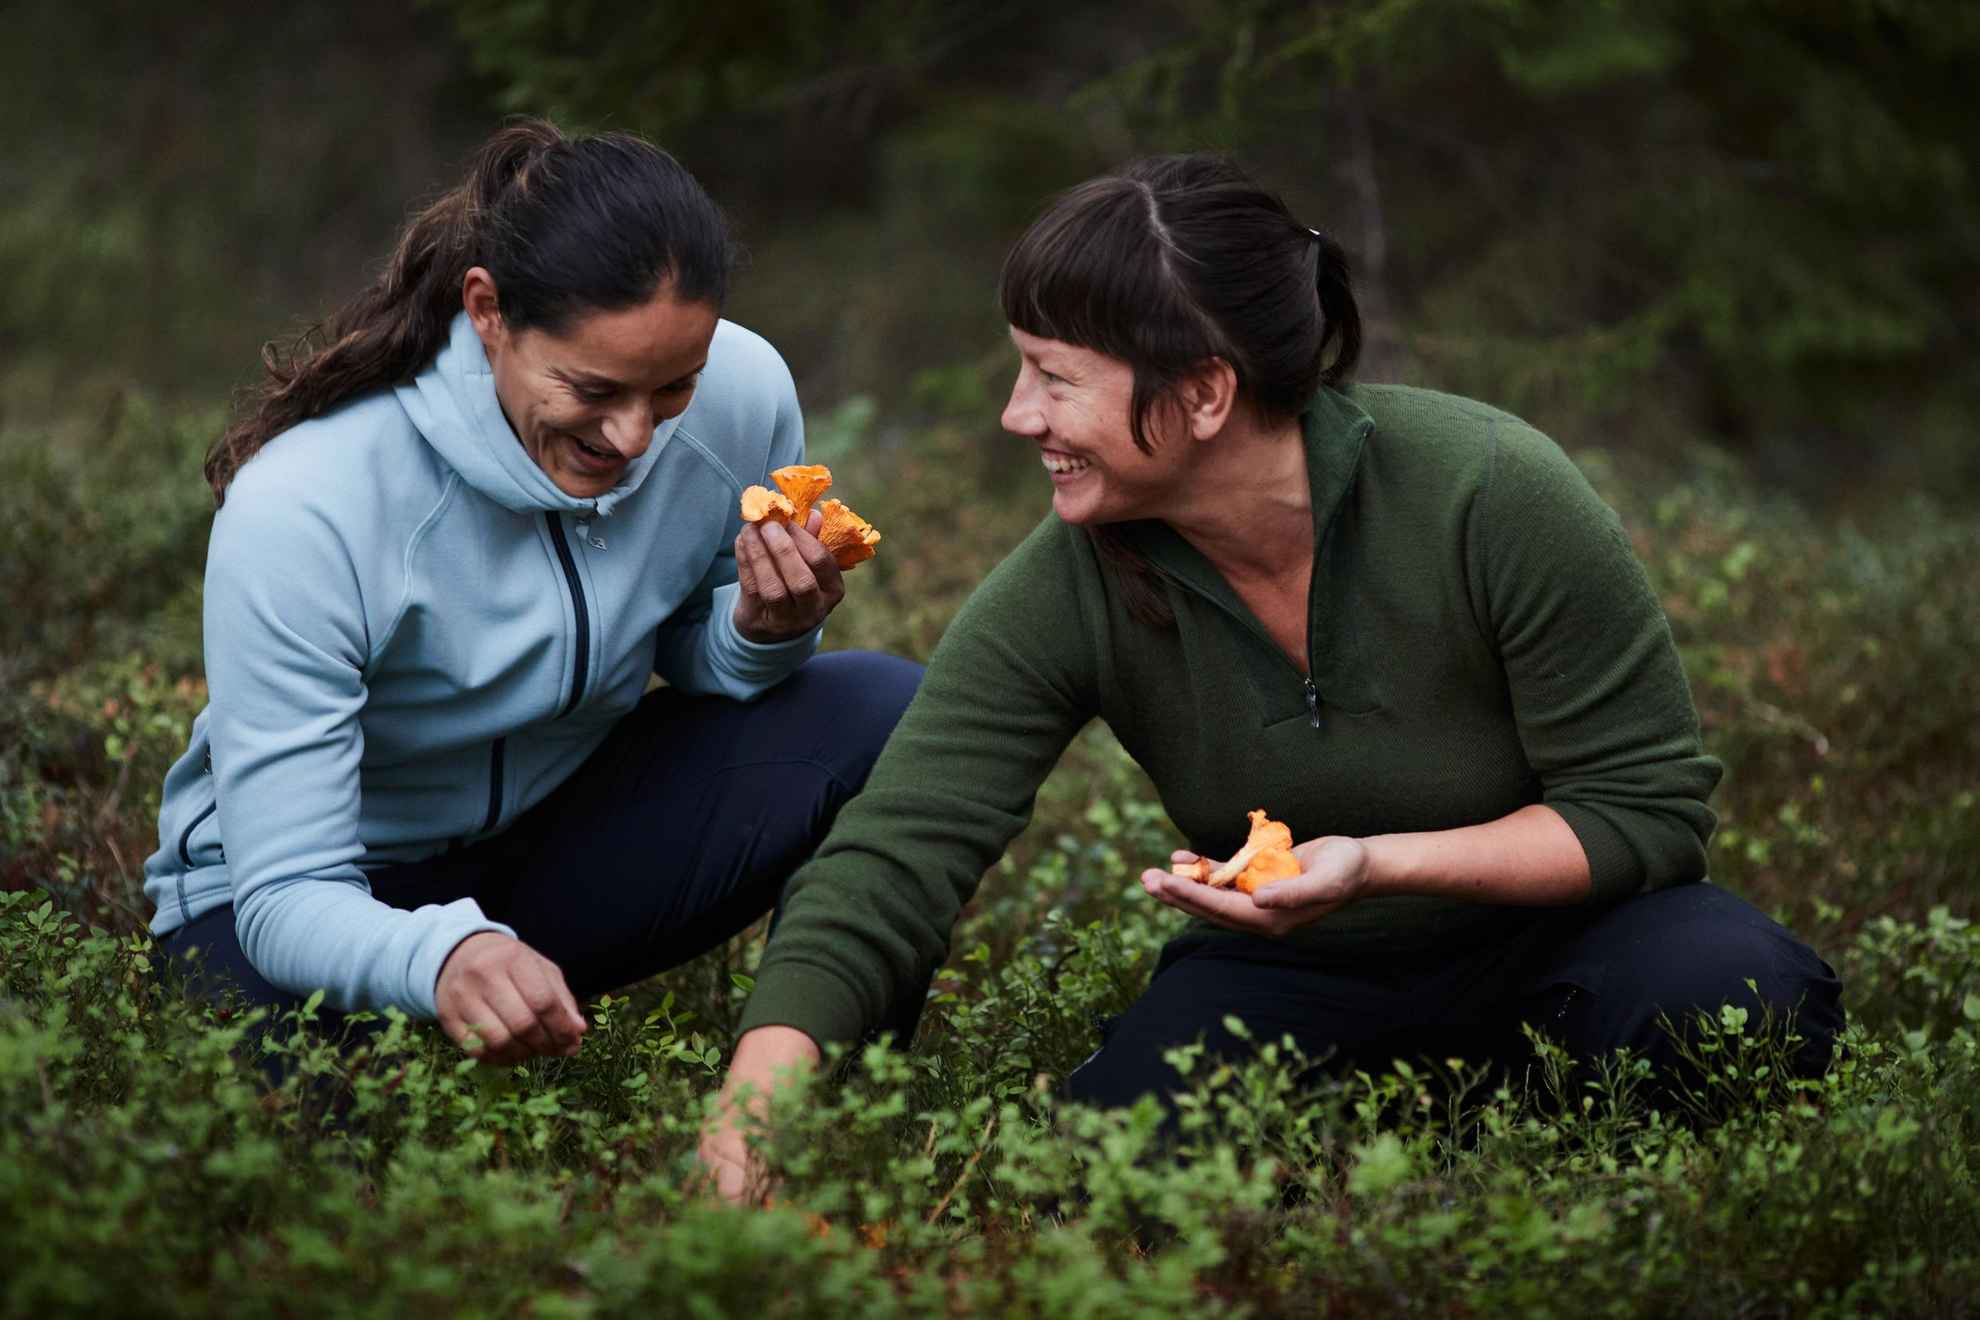 Twee dames plukken paddenstoelen in een bos.